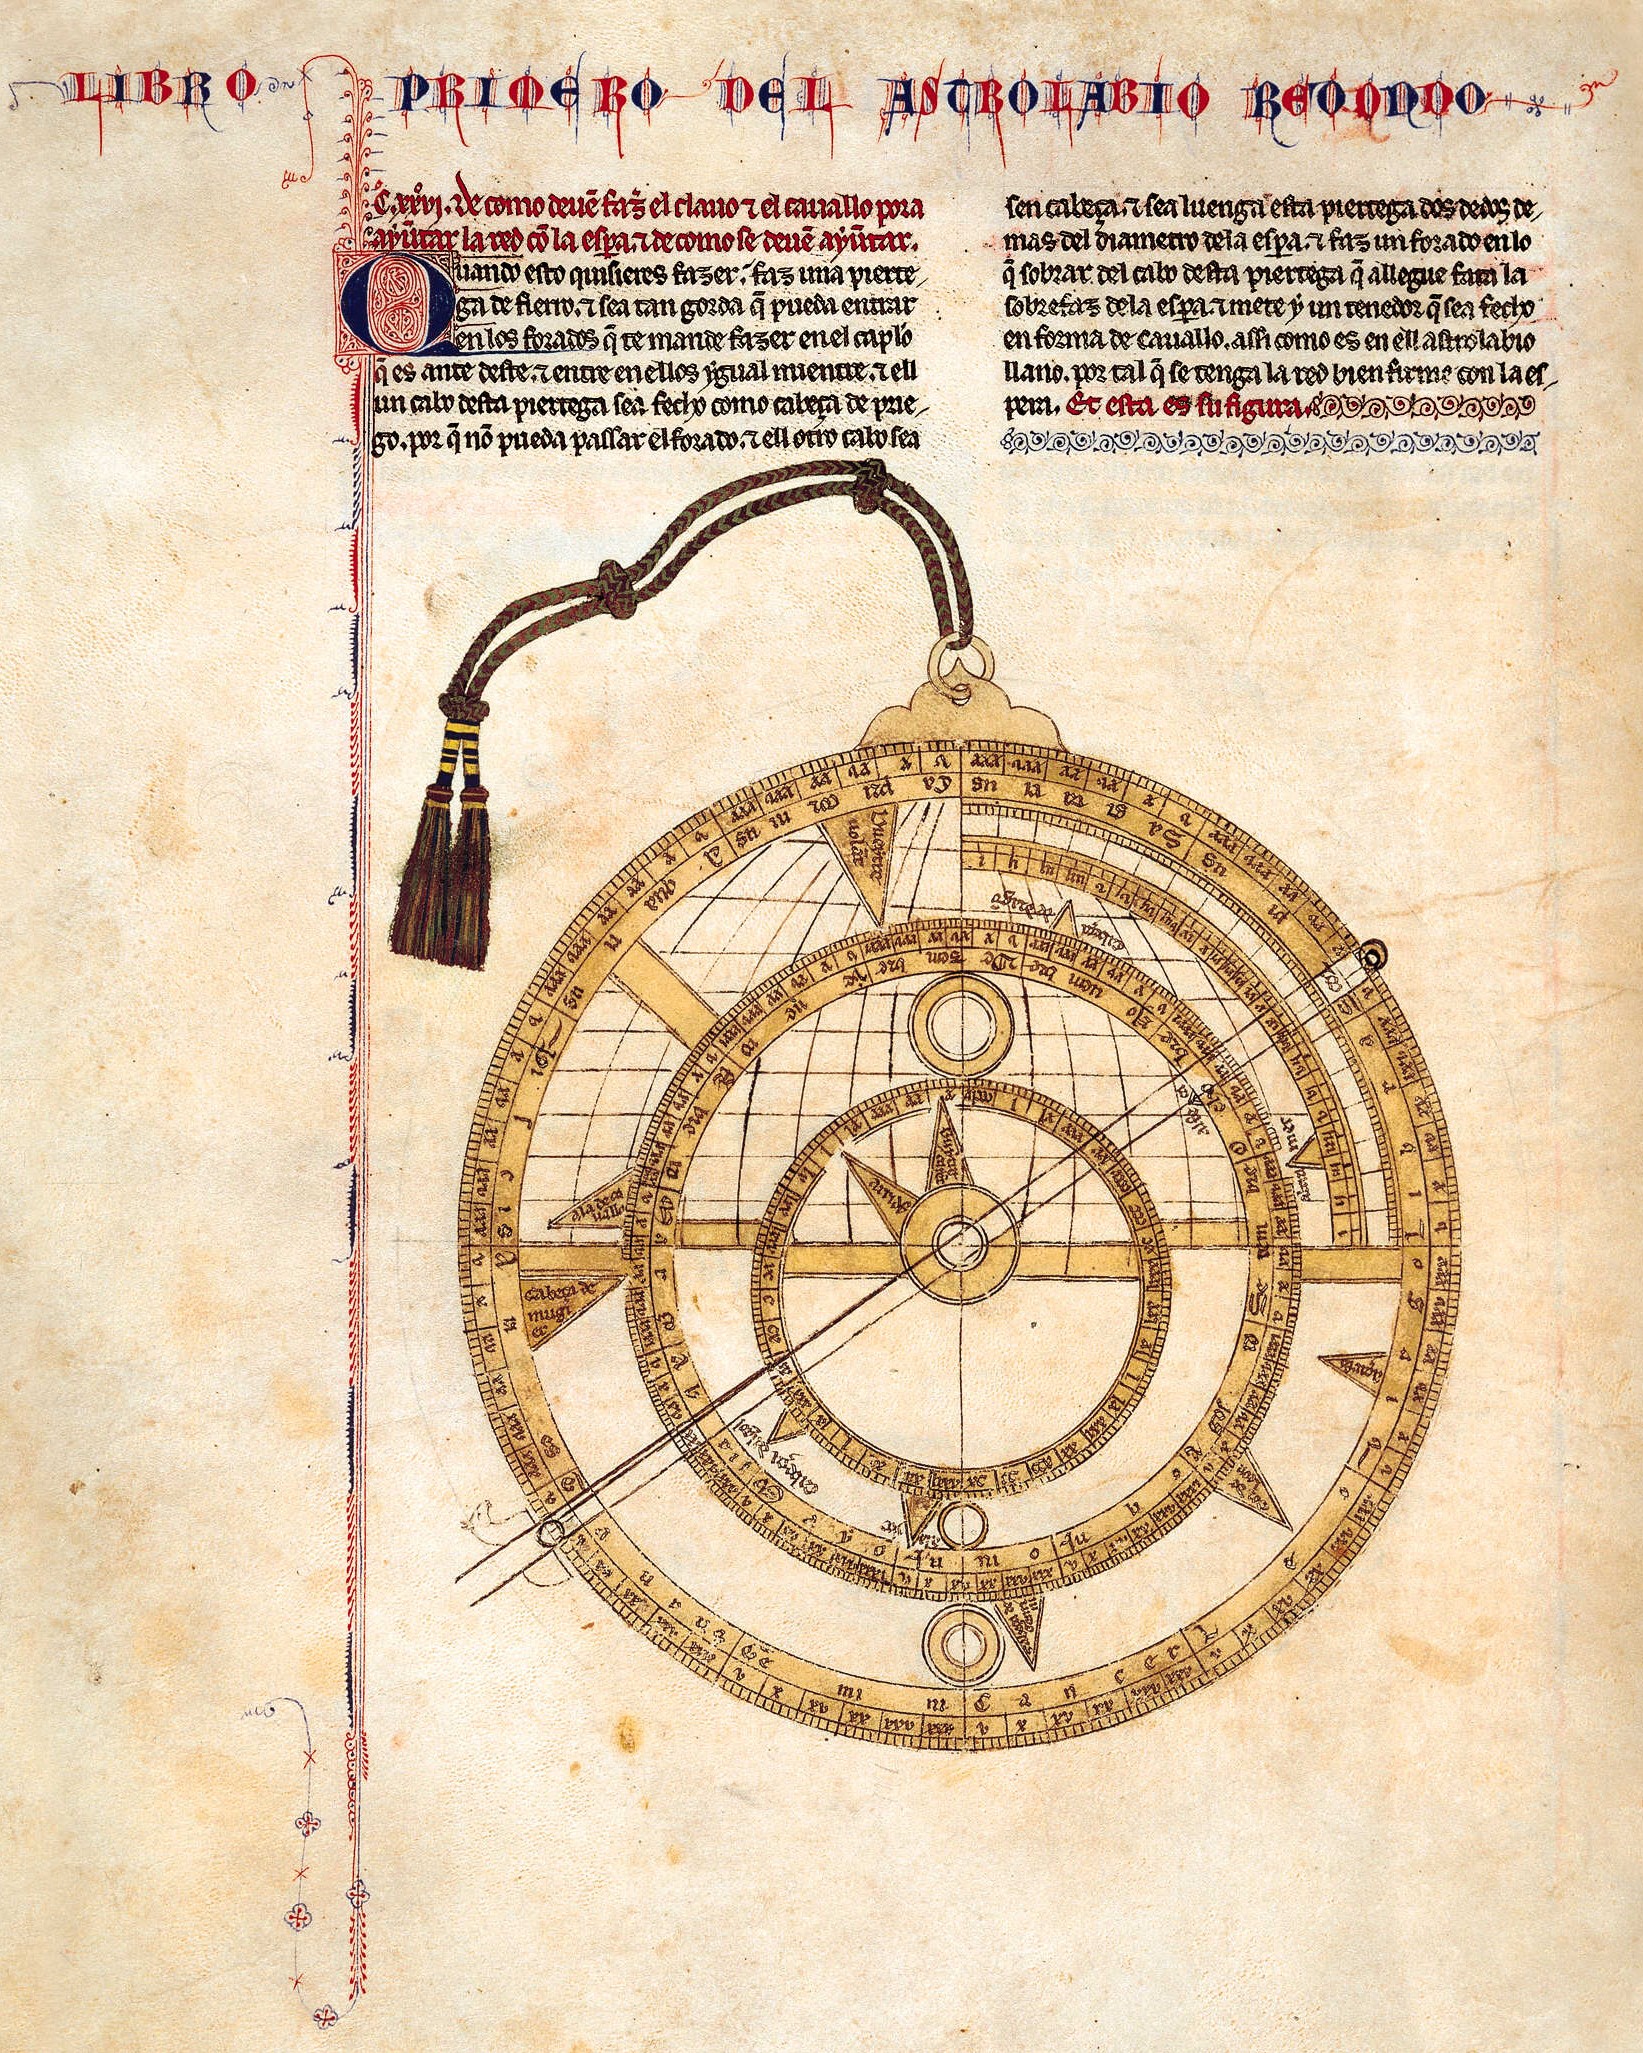 Libros del saber de Astronomía. S.XIII